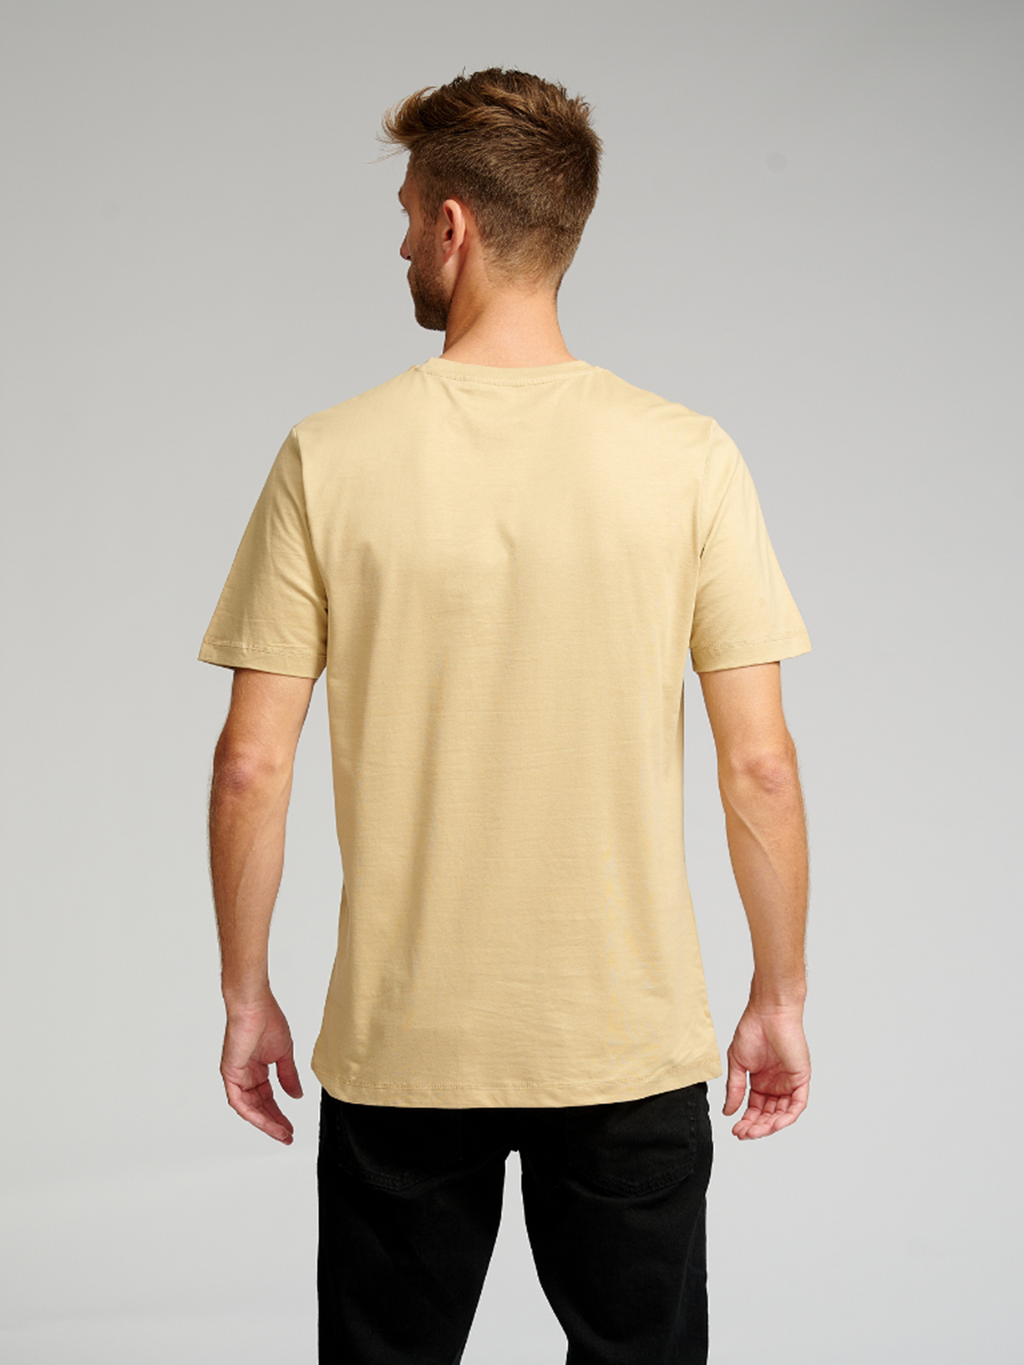 Basic T-shirt - Sand